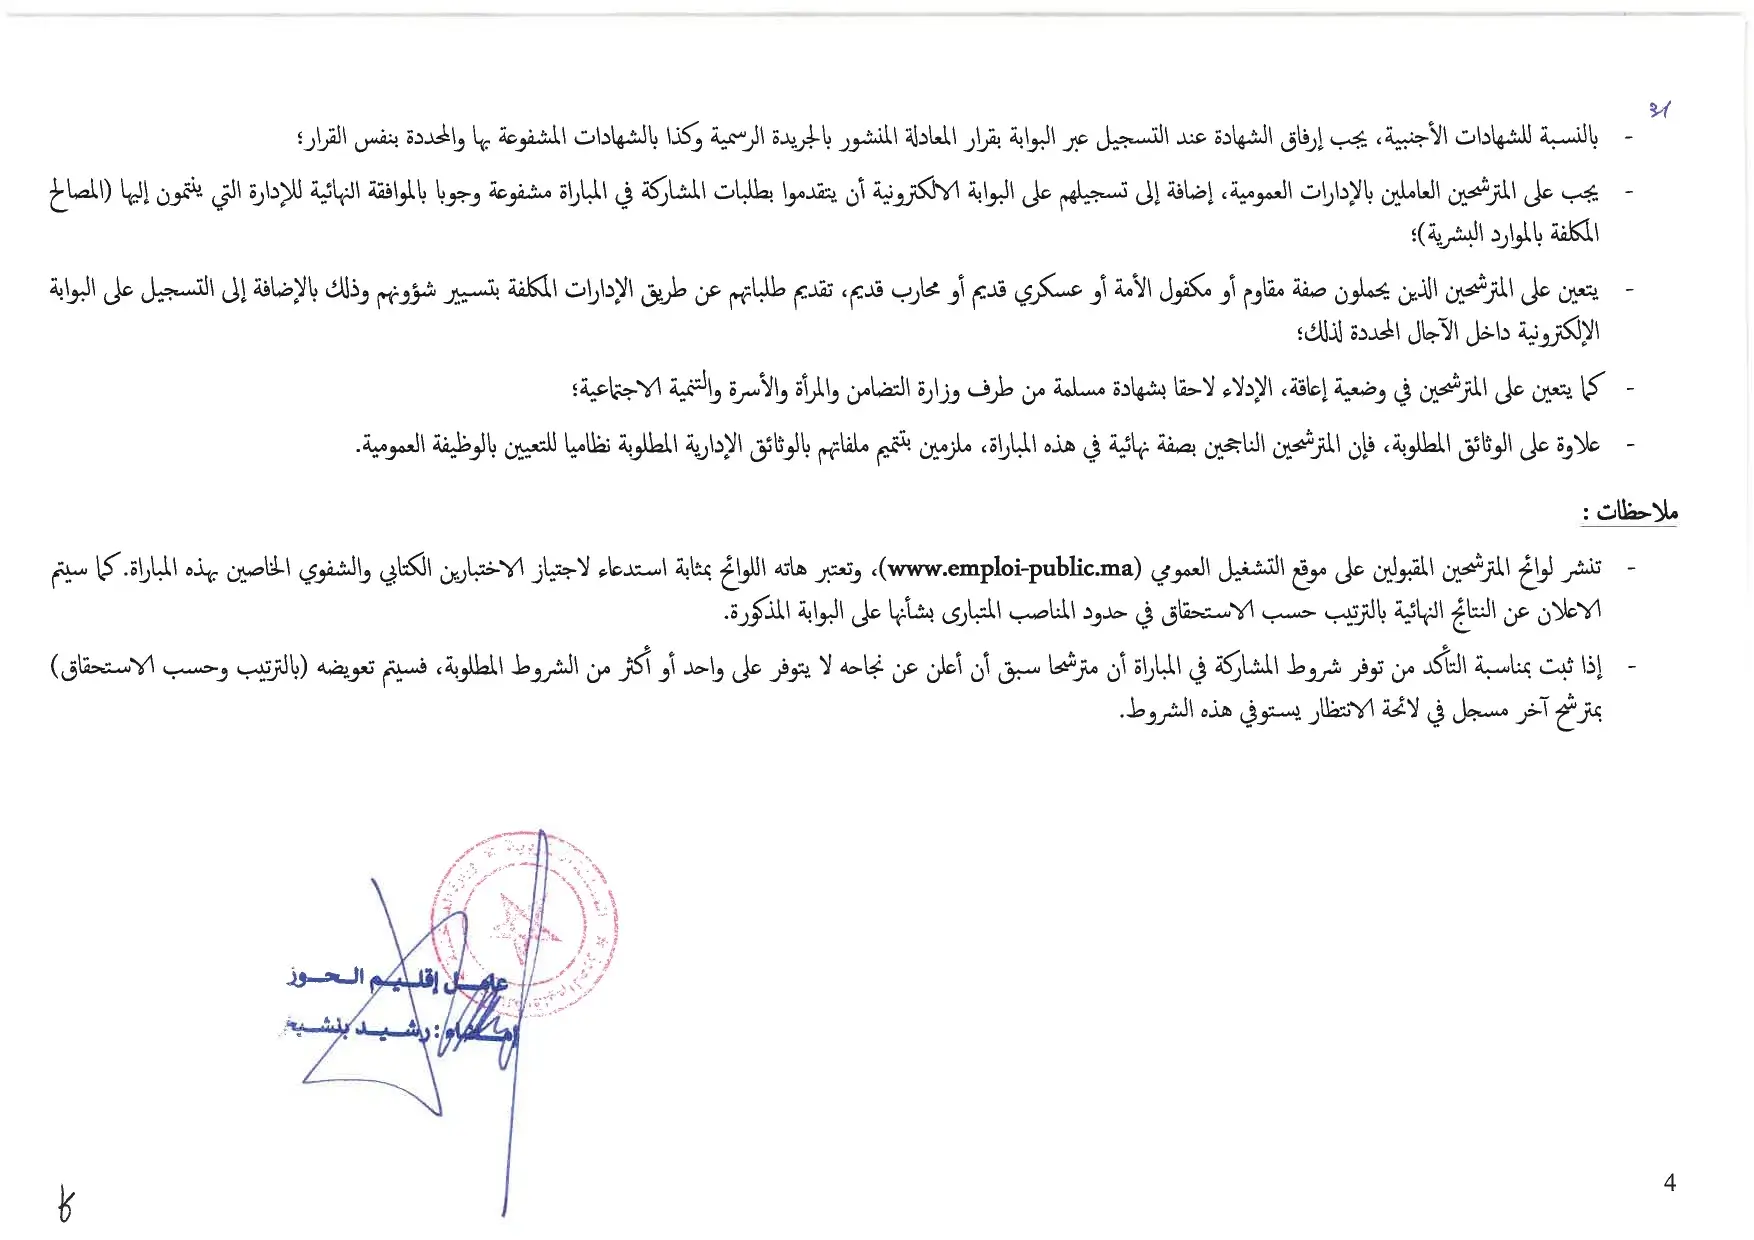 Concours de recrutement Province Al Haouz 2023 (30 postes)